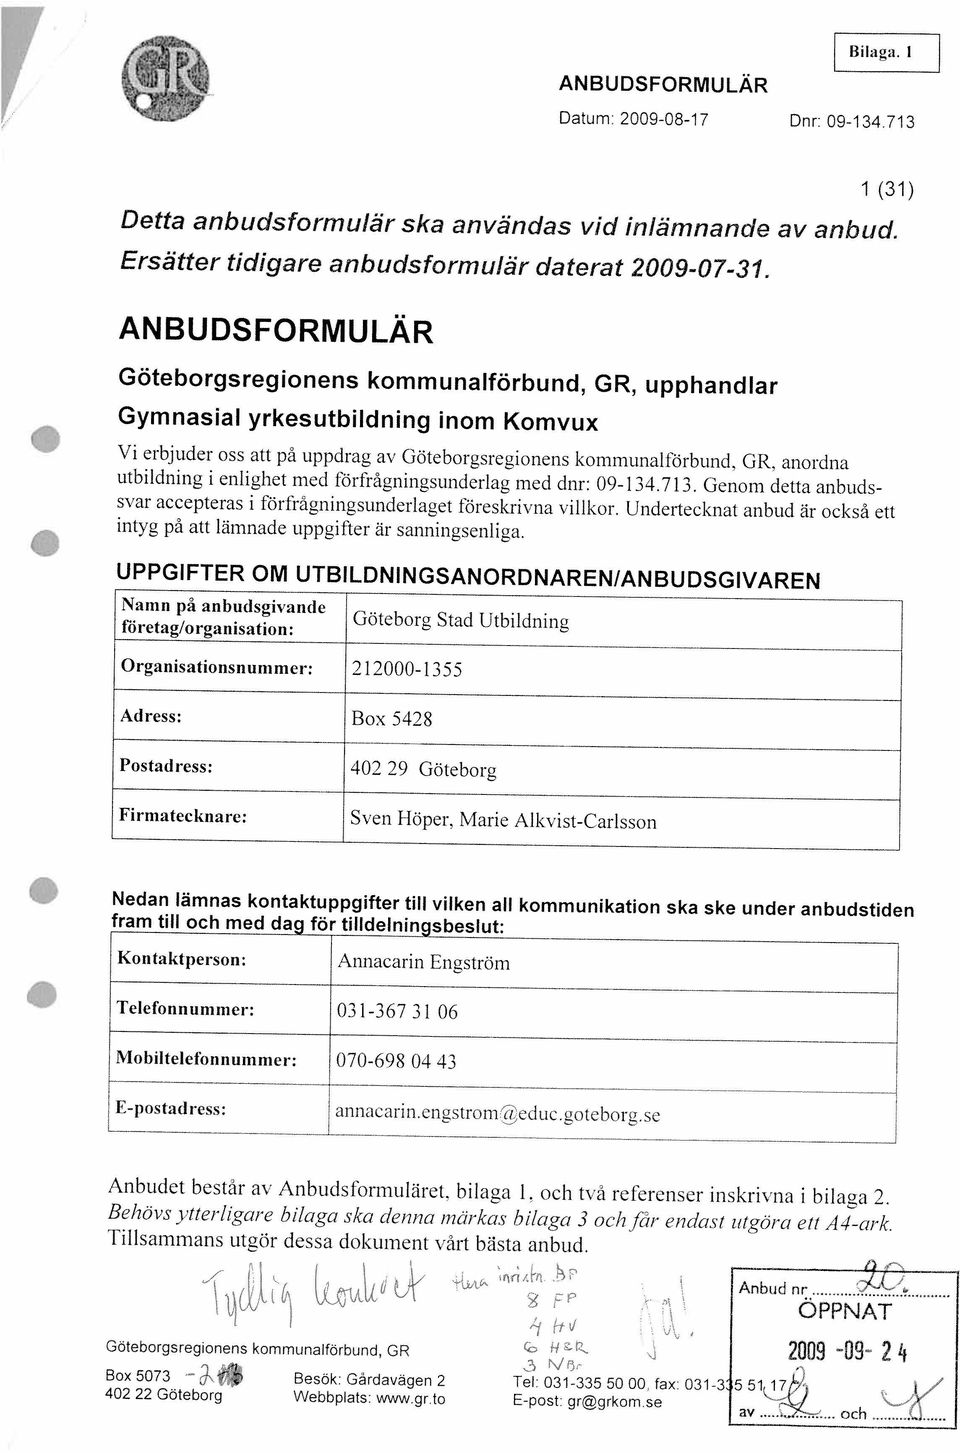 fax 031-3 551 17 Göteborgsregionens kommunalförbund, GR 2009-09- 2 4 ÖPPNAT Anbud nr- Tillsammans utgör dessa dokument vårt bästa anbud.